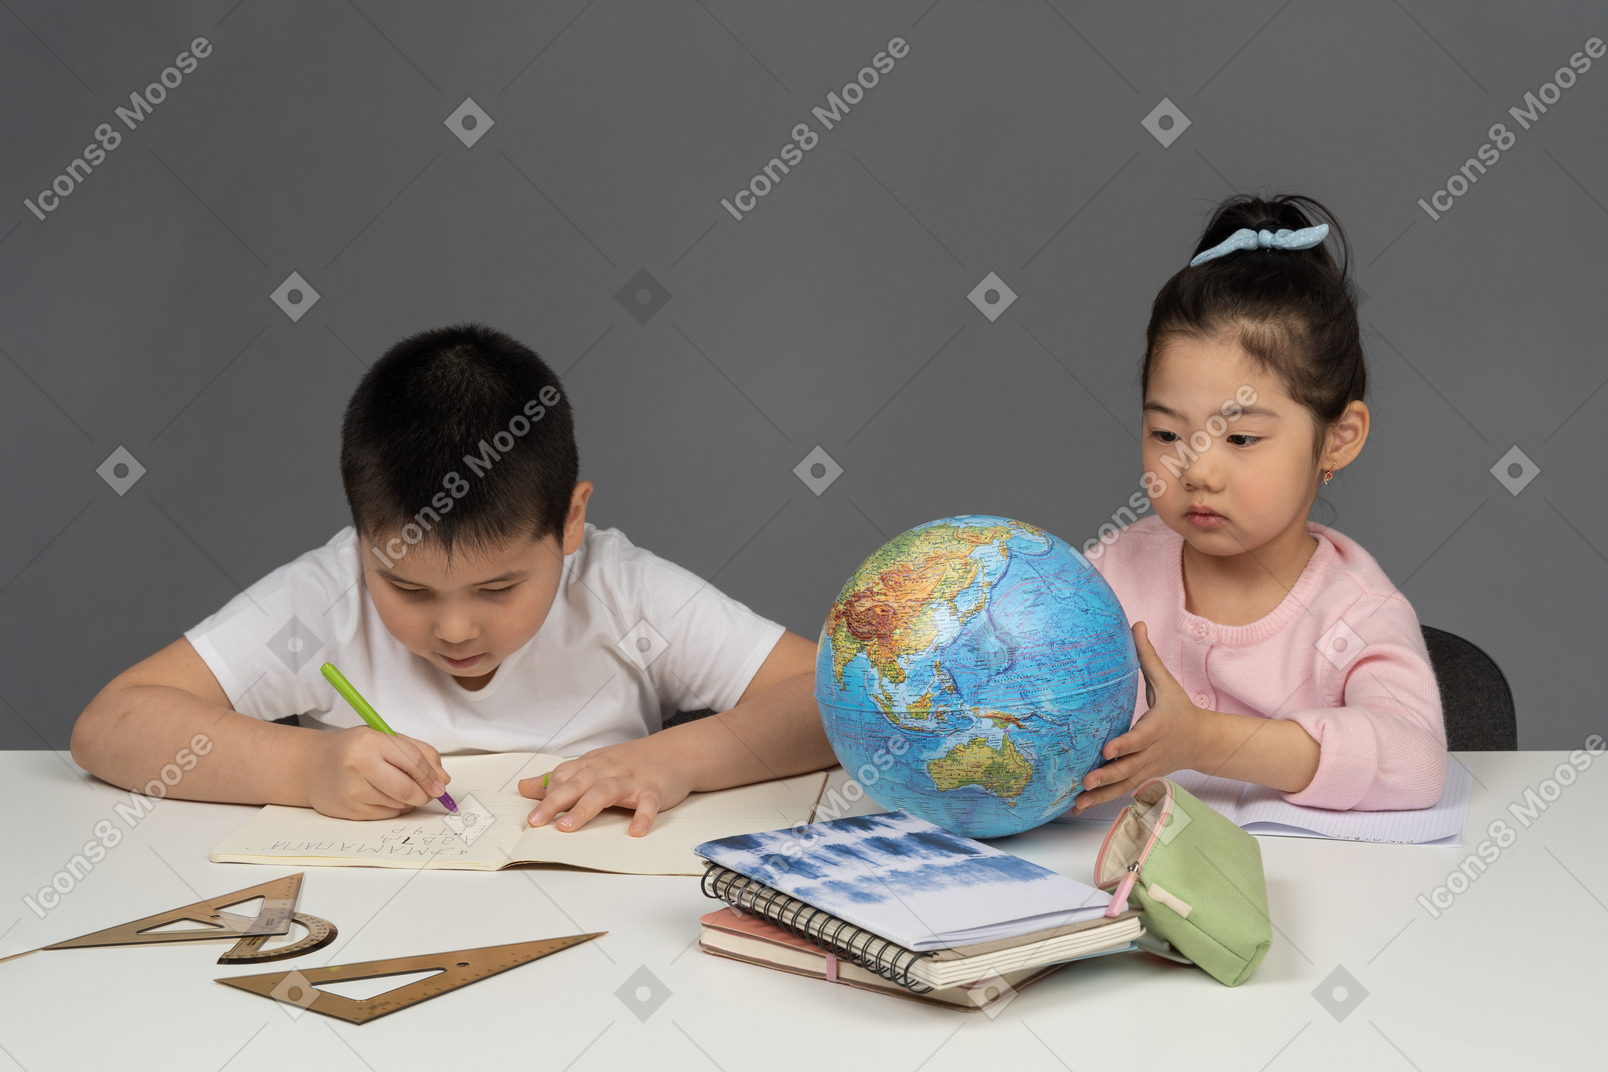 Мальчик делает домашнее задание, а девочка смотрит на глобус